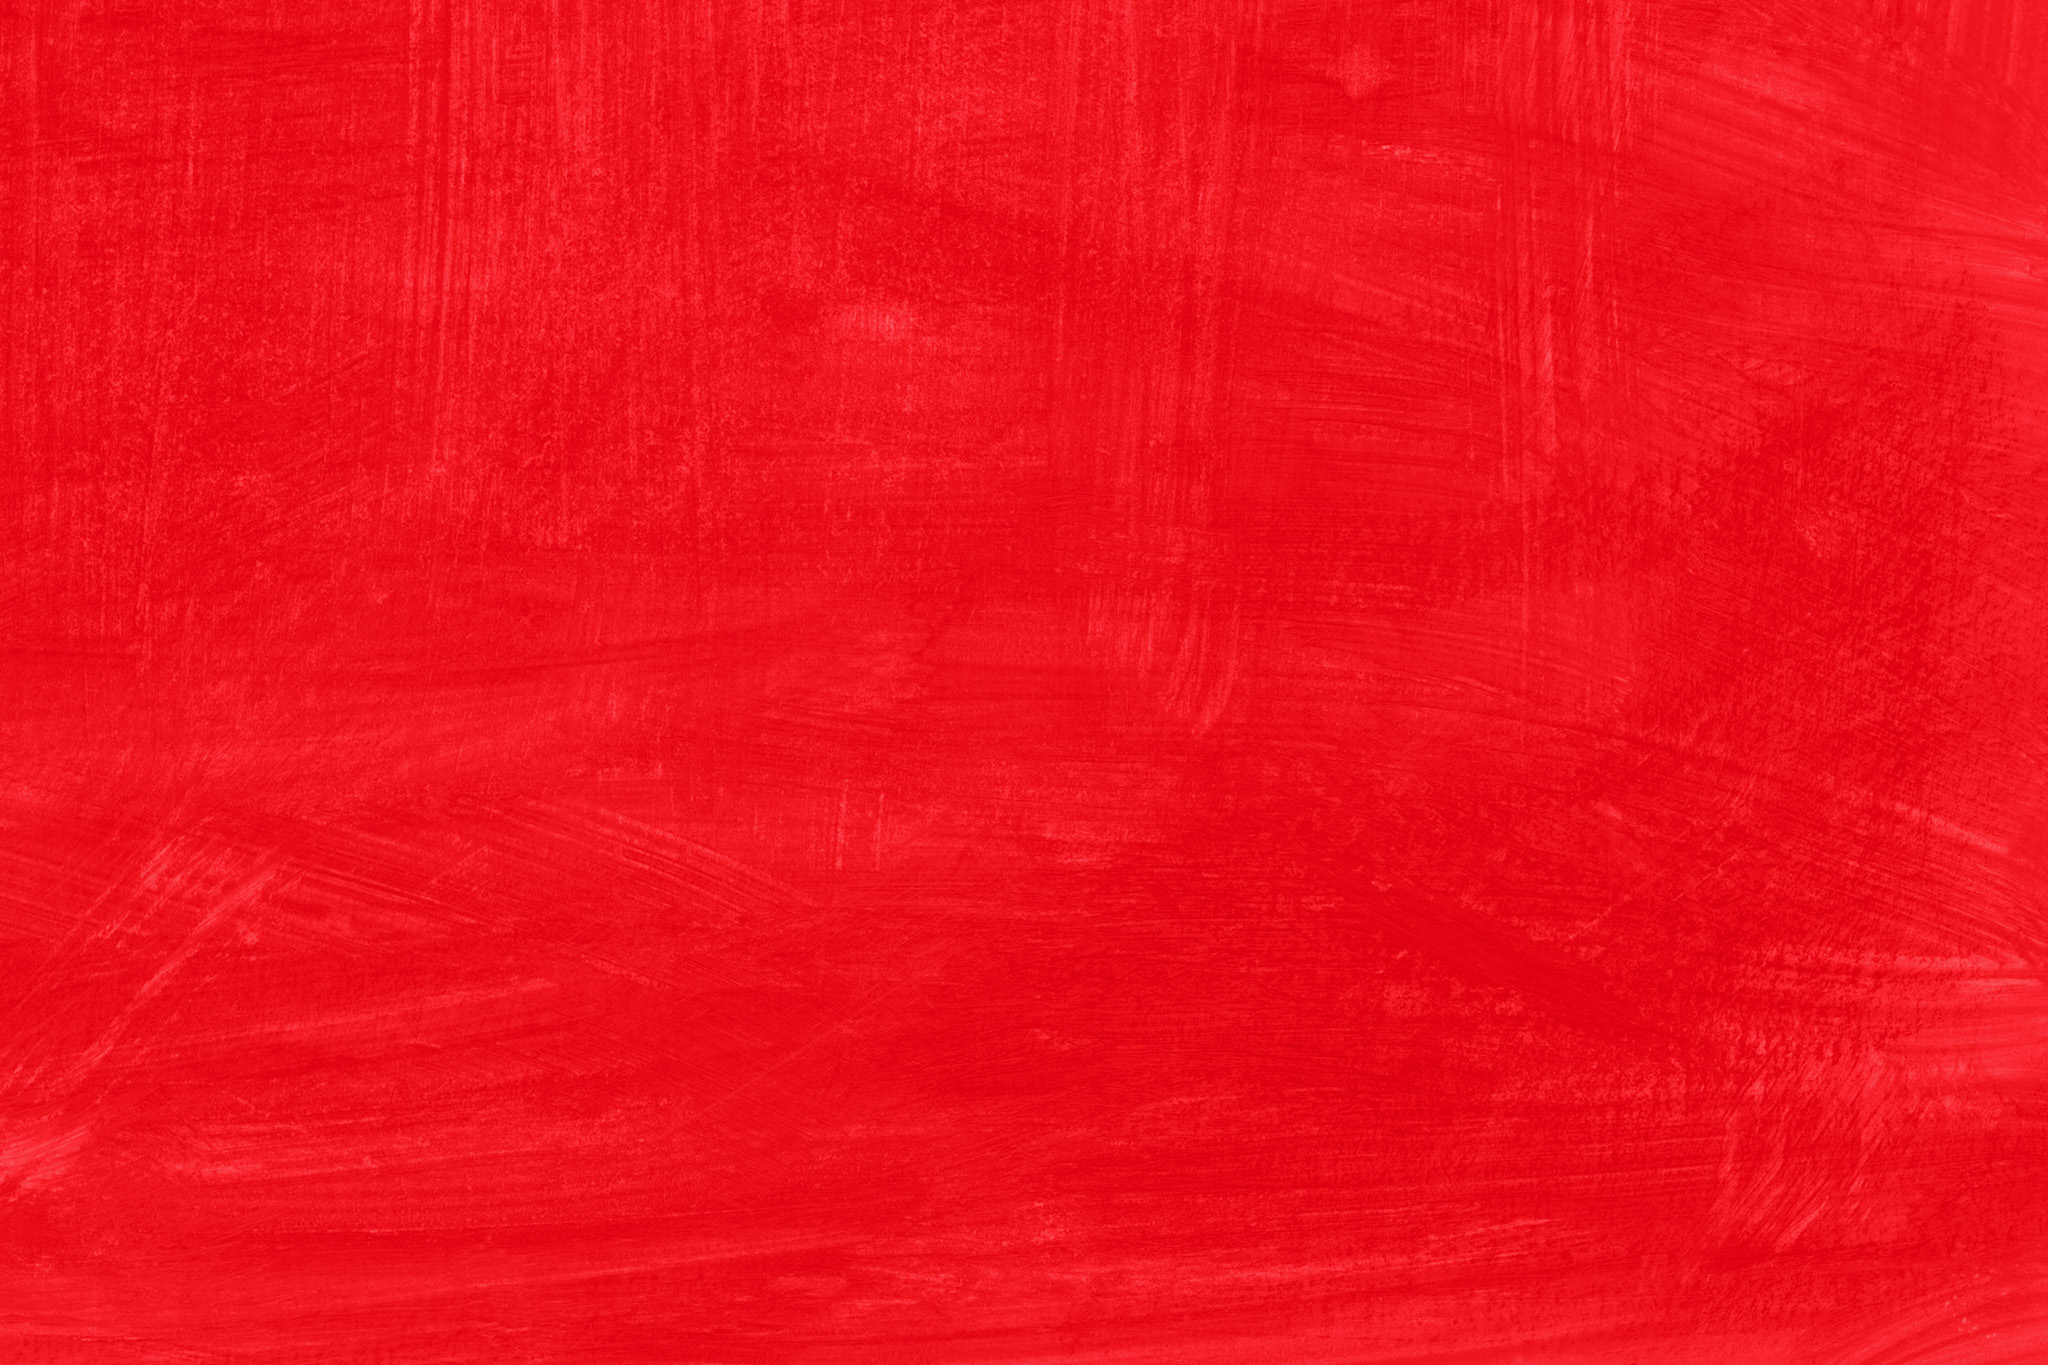 赤の無地のテクスチャ壁紙 の画像素材を無料ダウンロード 1 背景フリー素材 Beiz Images